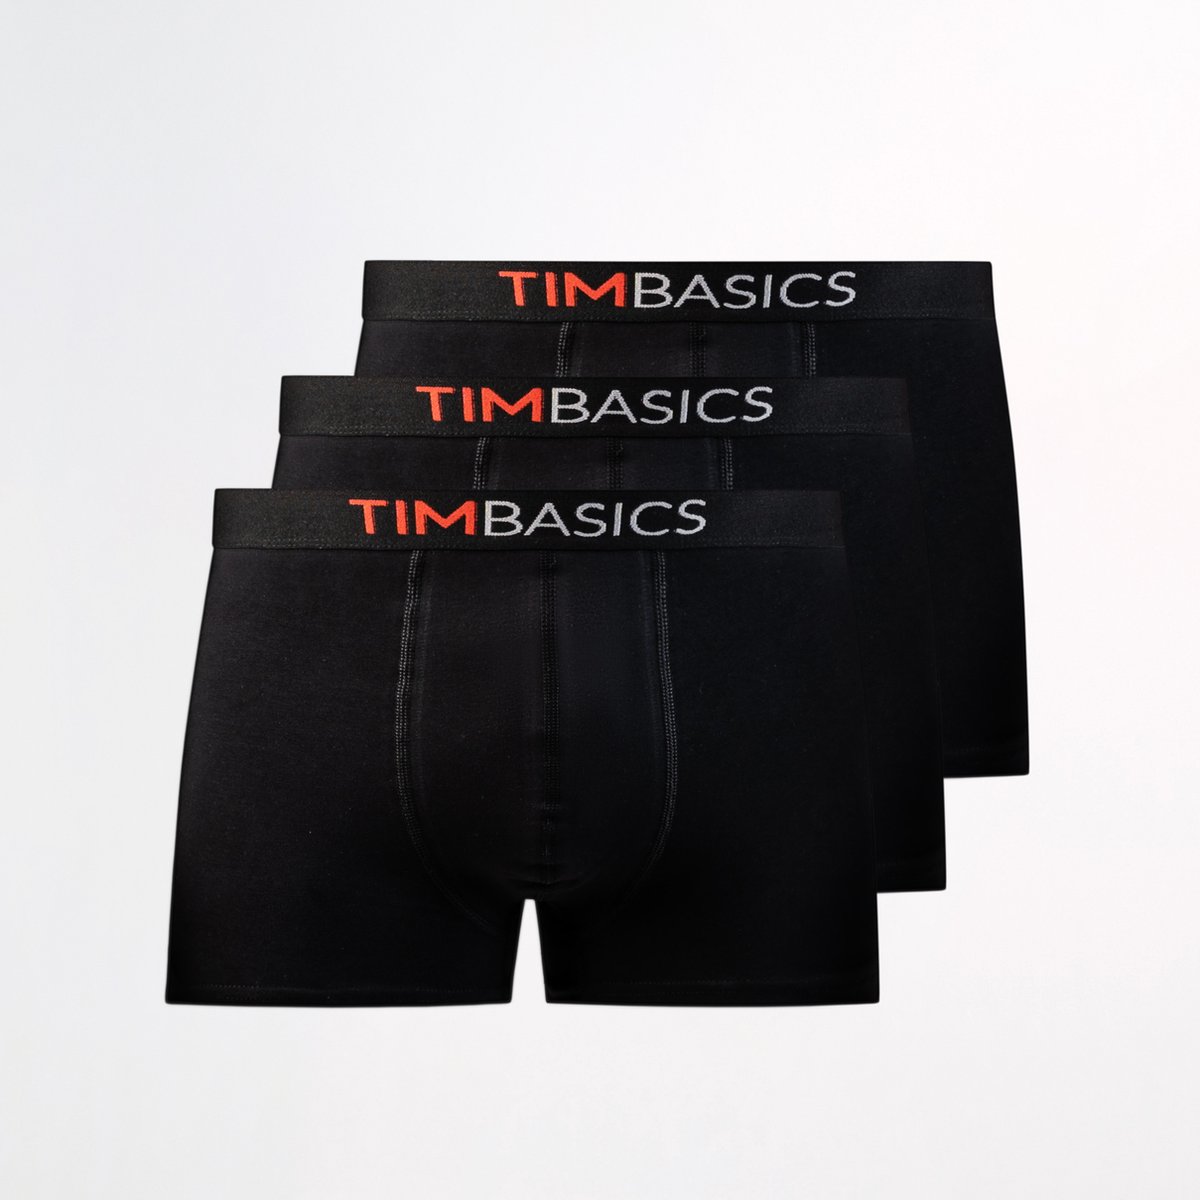 TimBasics - Heren boxershorts 3 pack - Zwart – L - Heren ondergoed